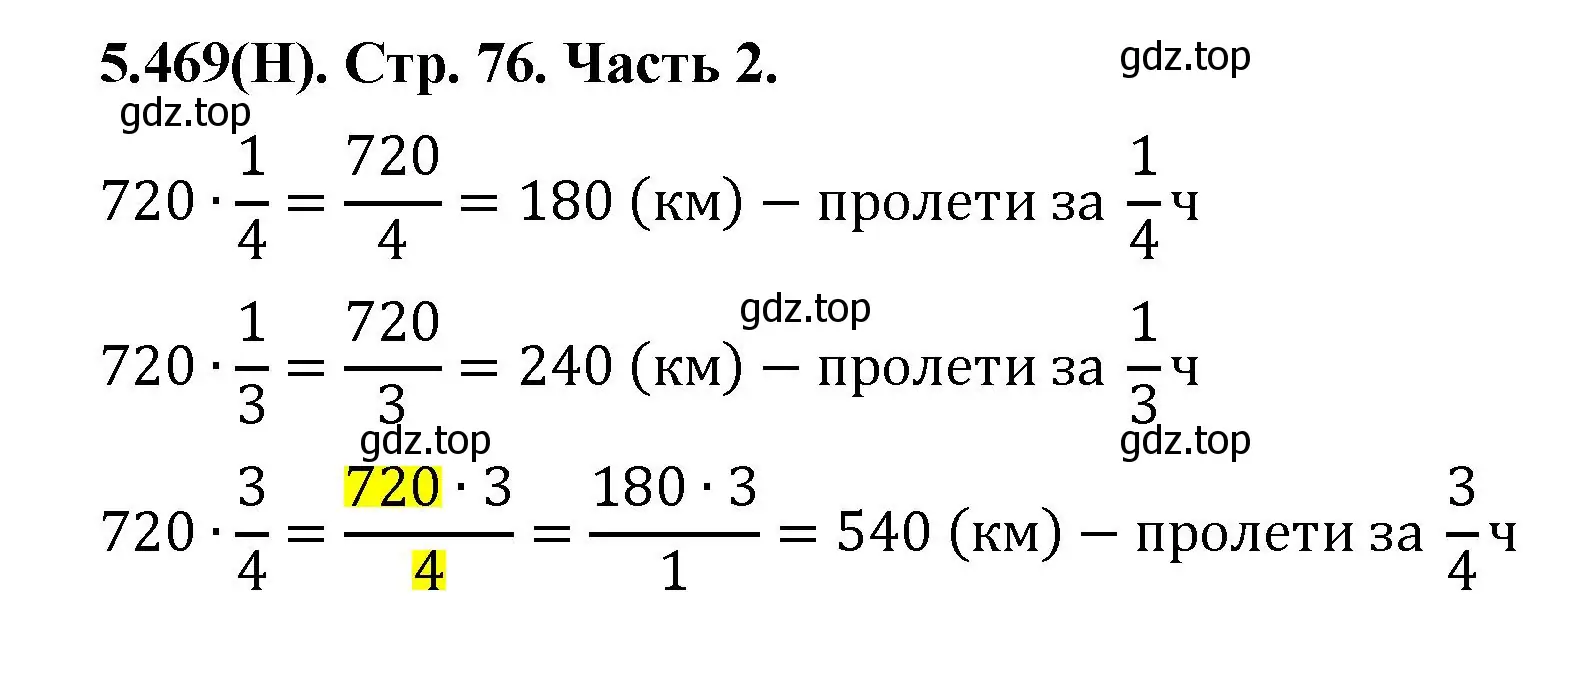 Решение номер 5.469 (страница 76) гдз по математике 5 класс Виленкин, Жохов, учебник 2 часть